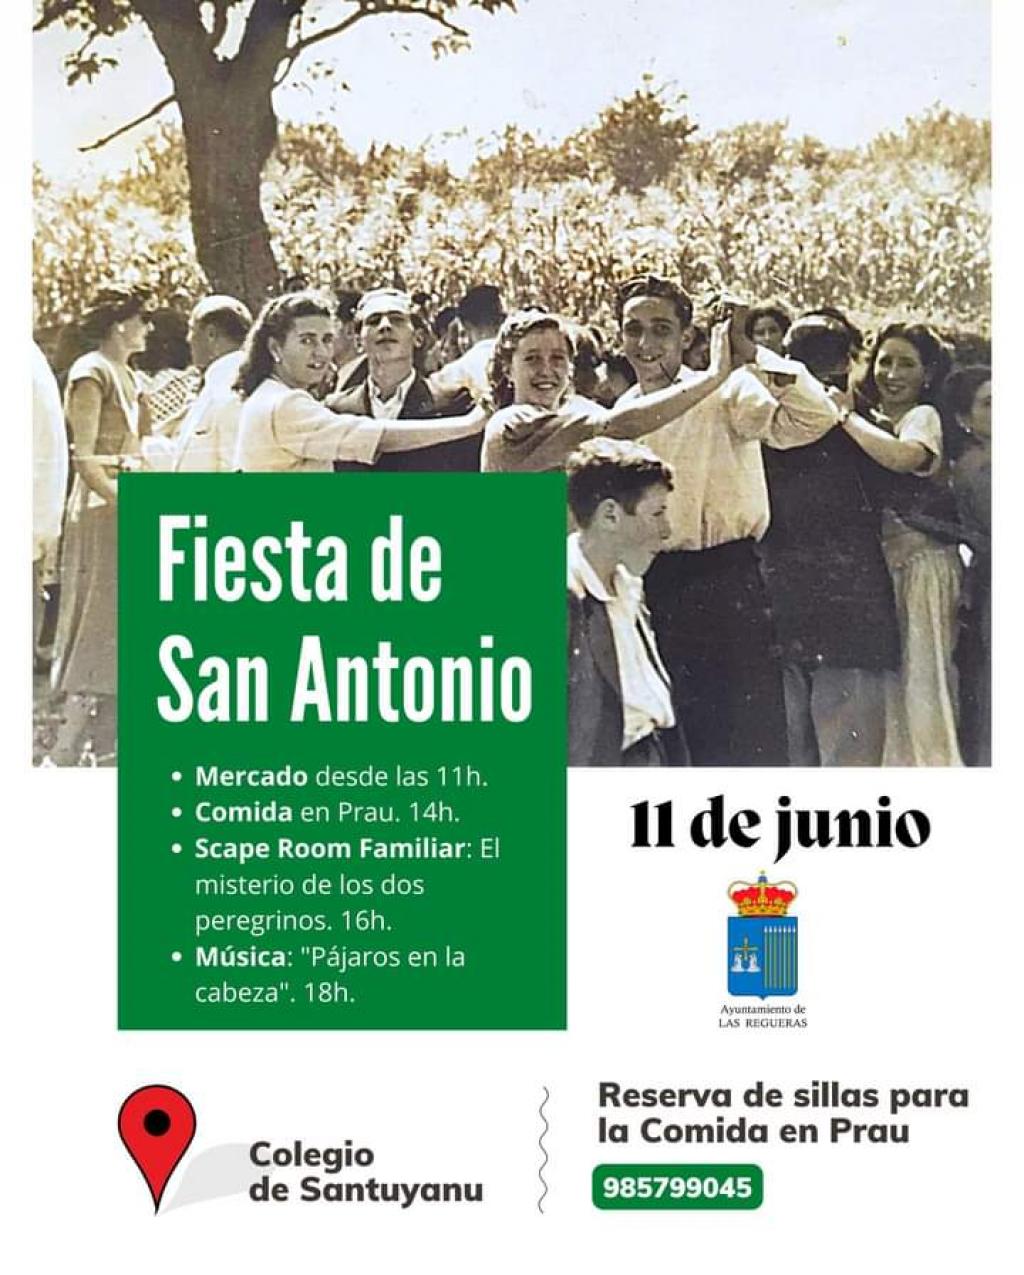 El Tapin - Las Regueras celebrará San Antonio